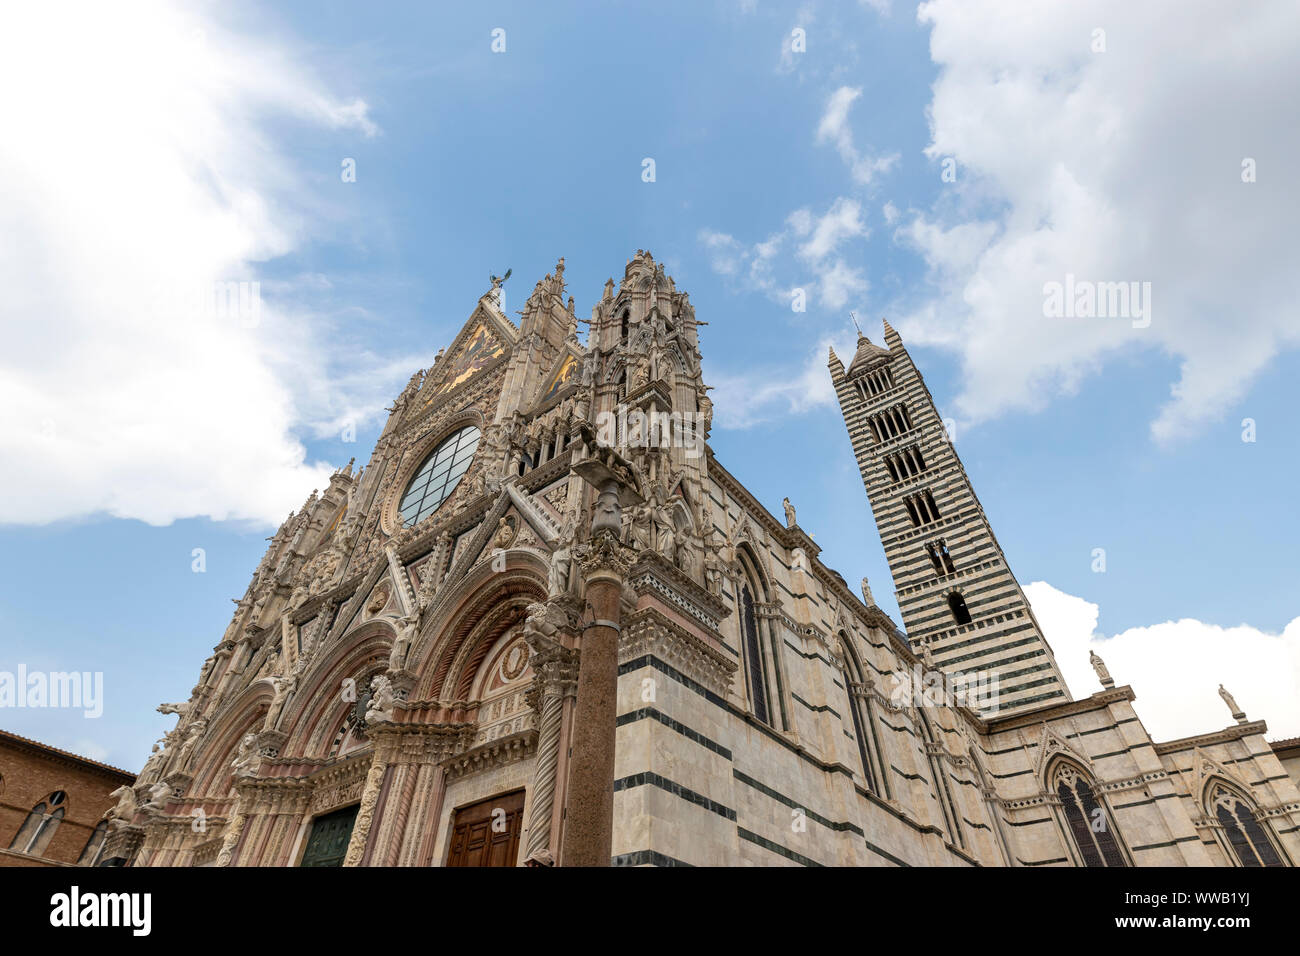 Blick auf die Fassade und der Glockenturm der Kathedrale Santa Maria Assunta, Siena - Italien Stockfoto